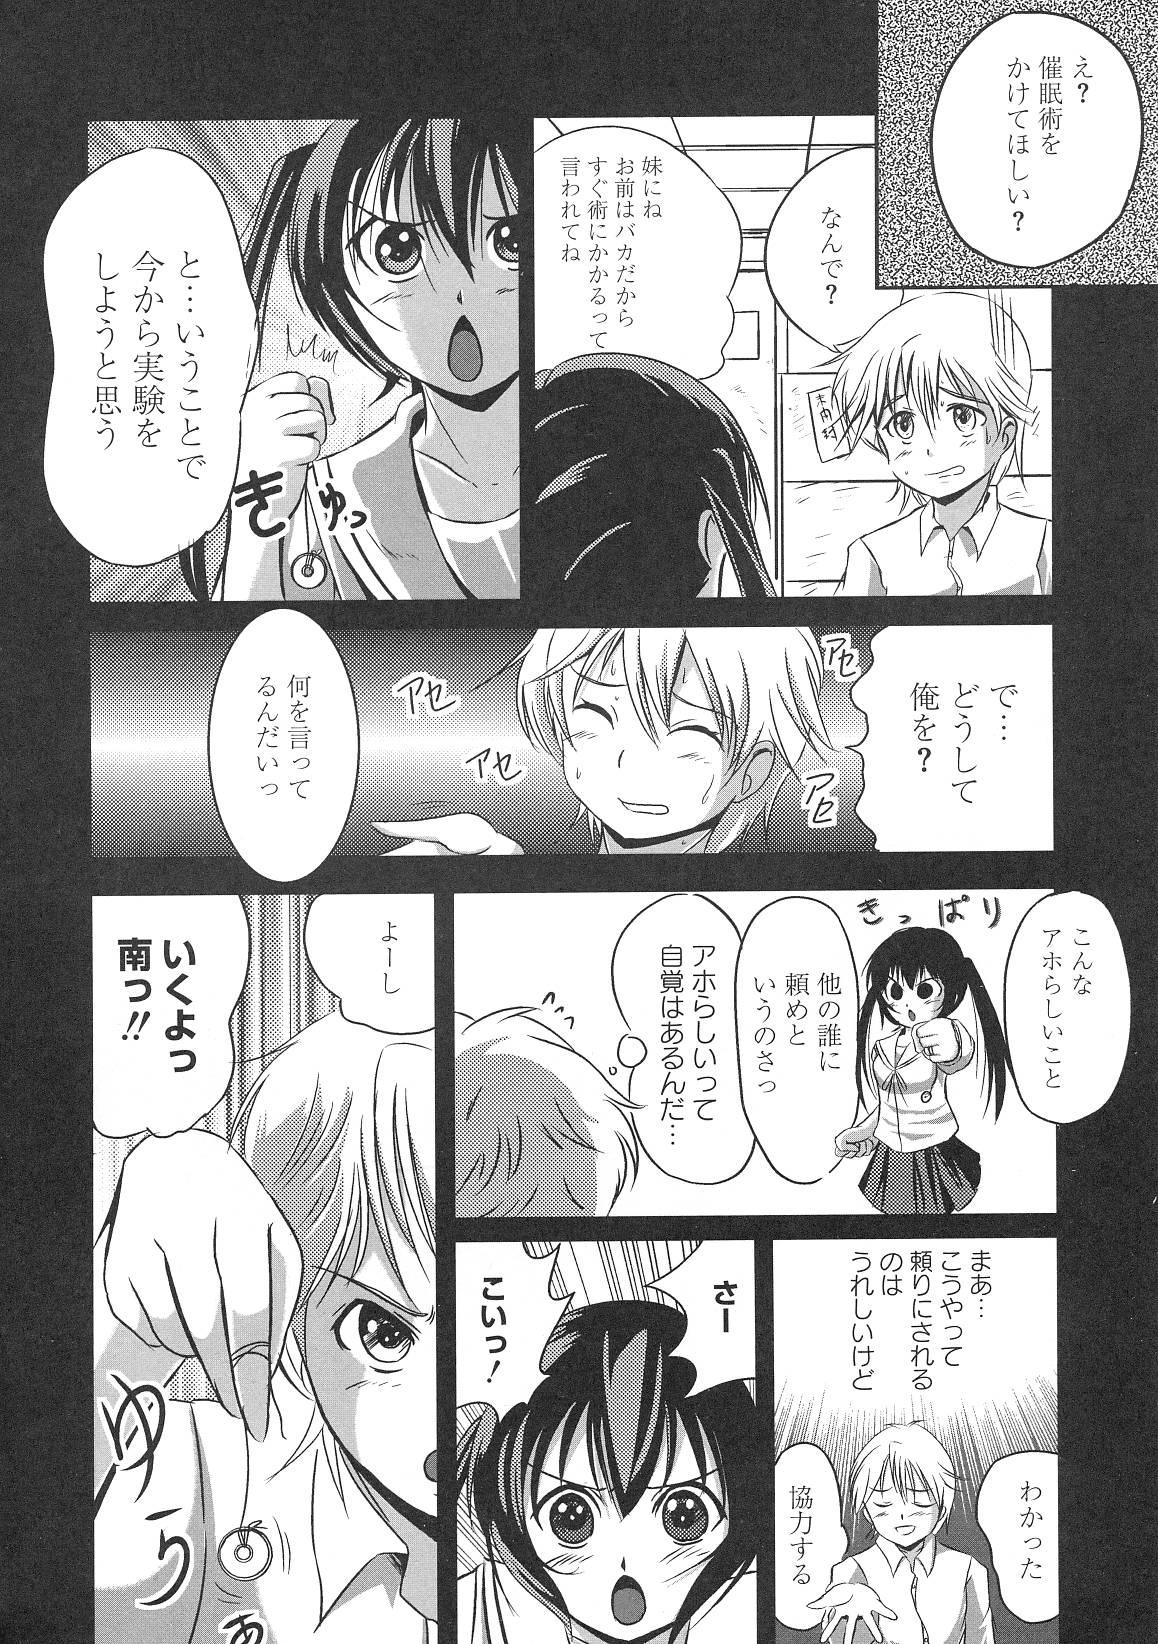 Spa Minami no Shikijou 3 Shimai - Minami-ke Shemale - Page 5